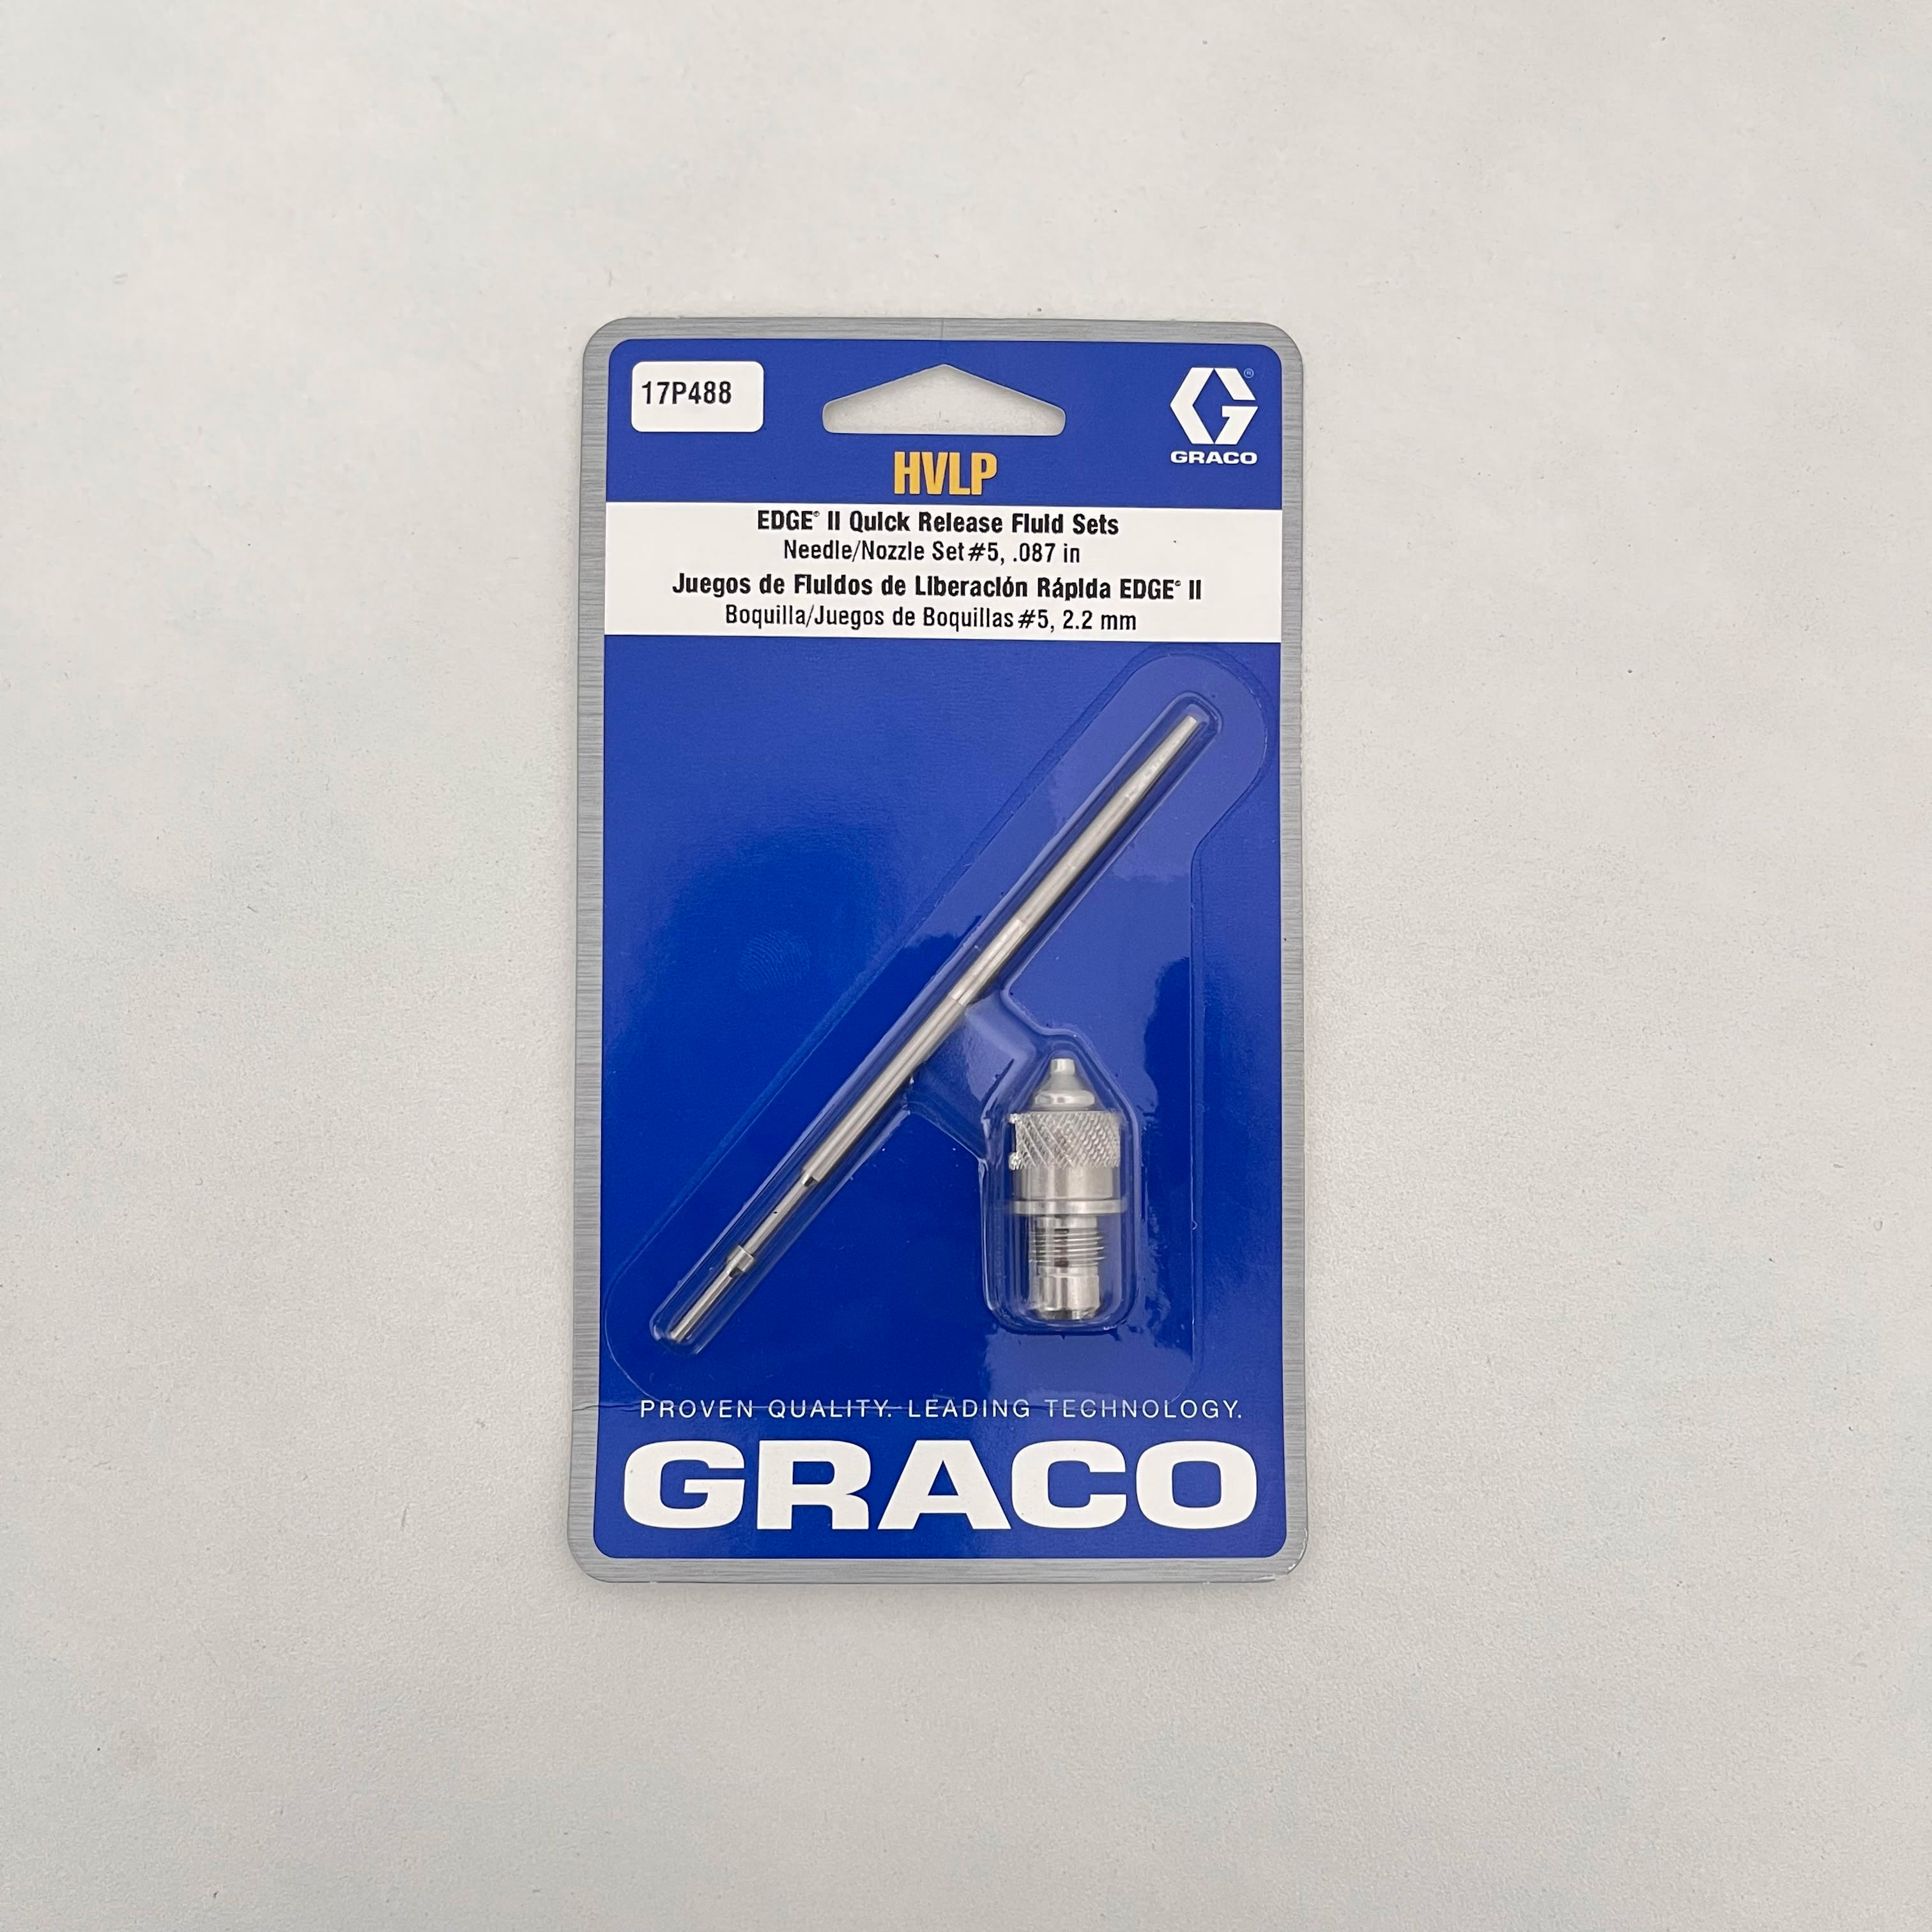 GRACO OriginalL Set, HVLP EDGE II - 17P488